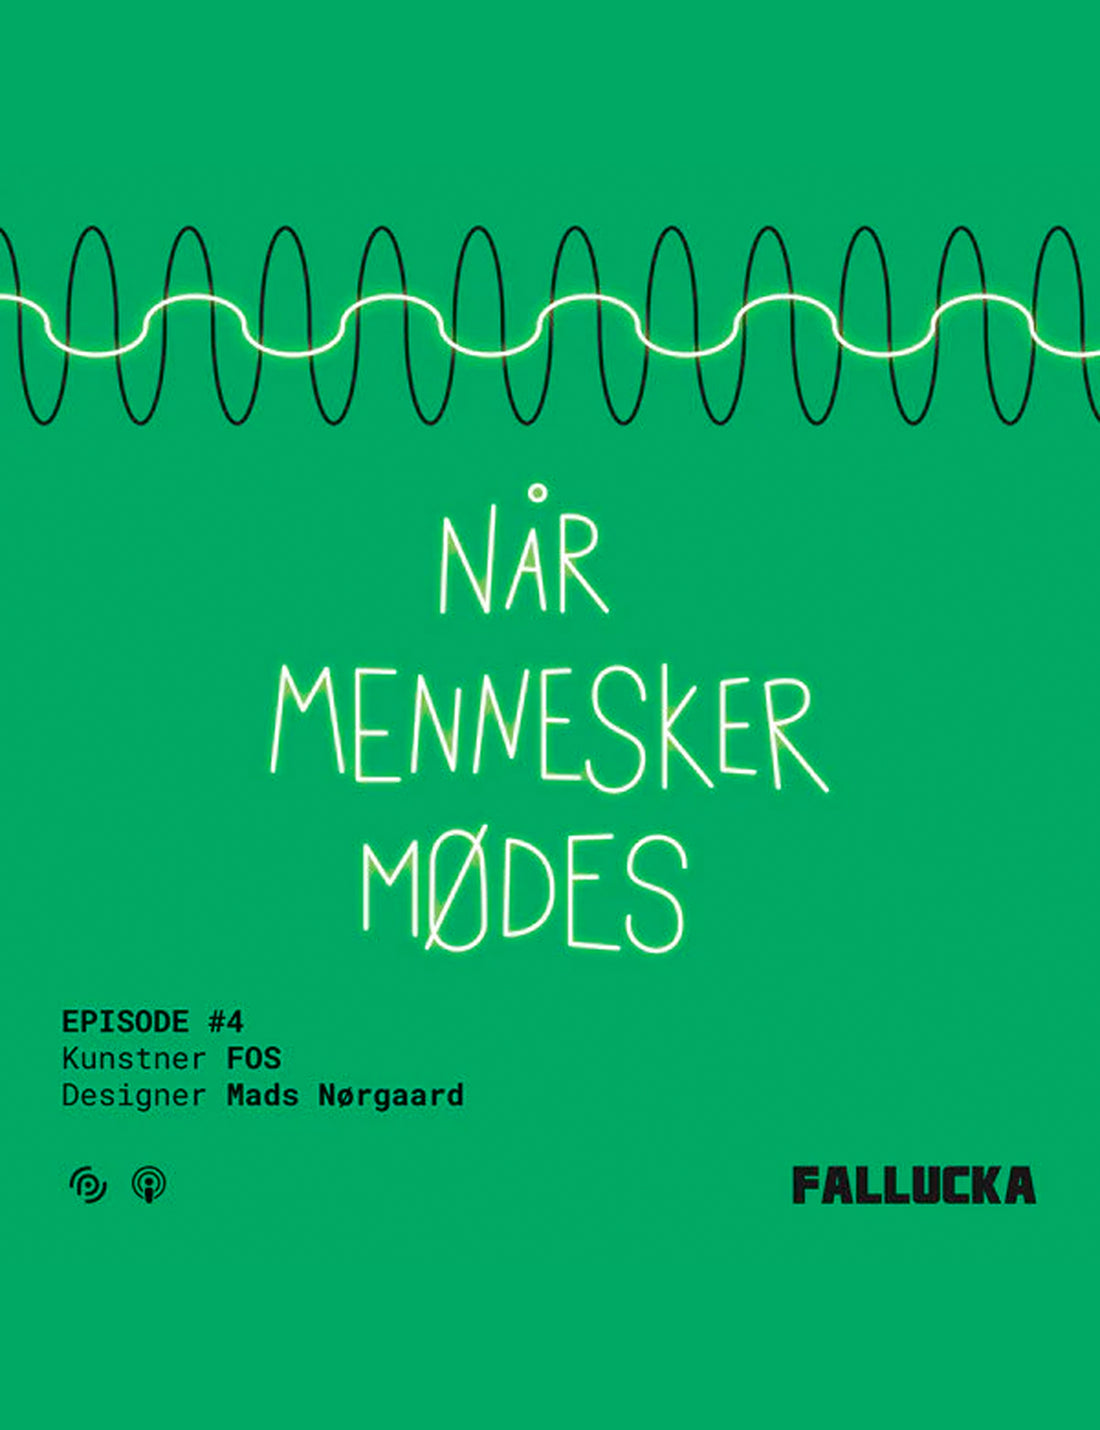 FALLUCKA - FOS & MADS NØRGAARD